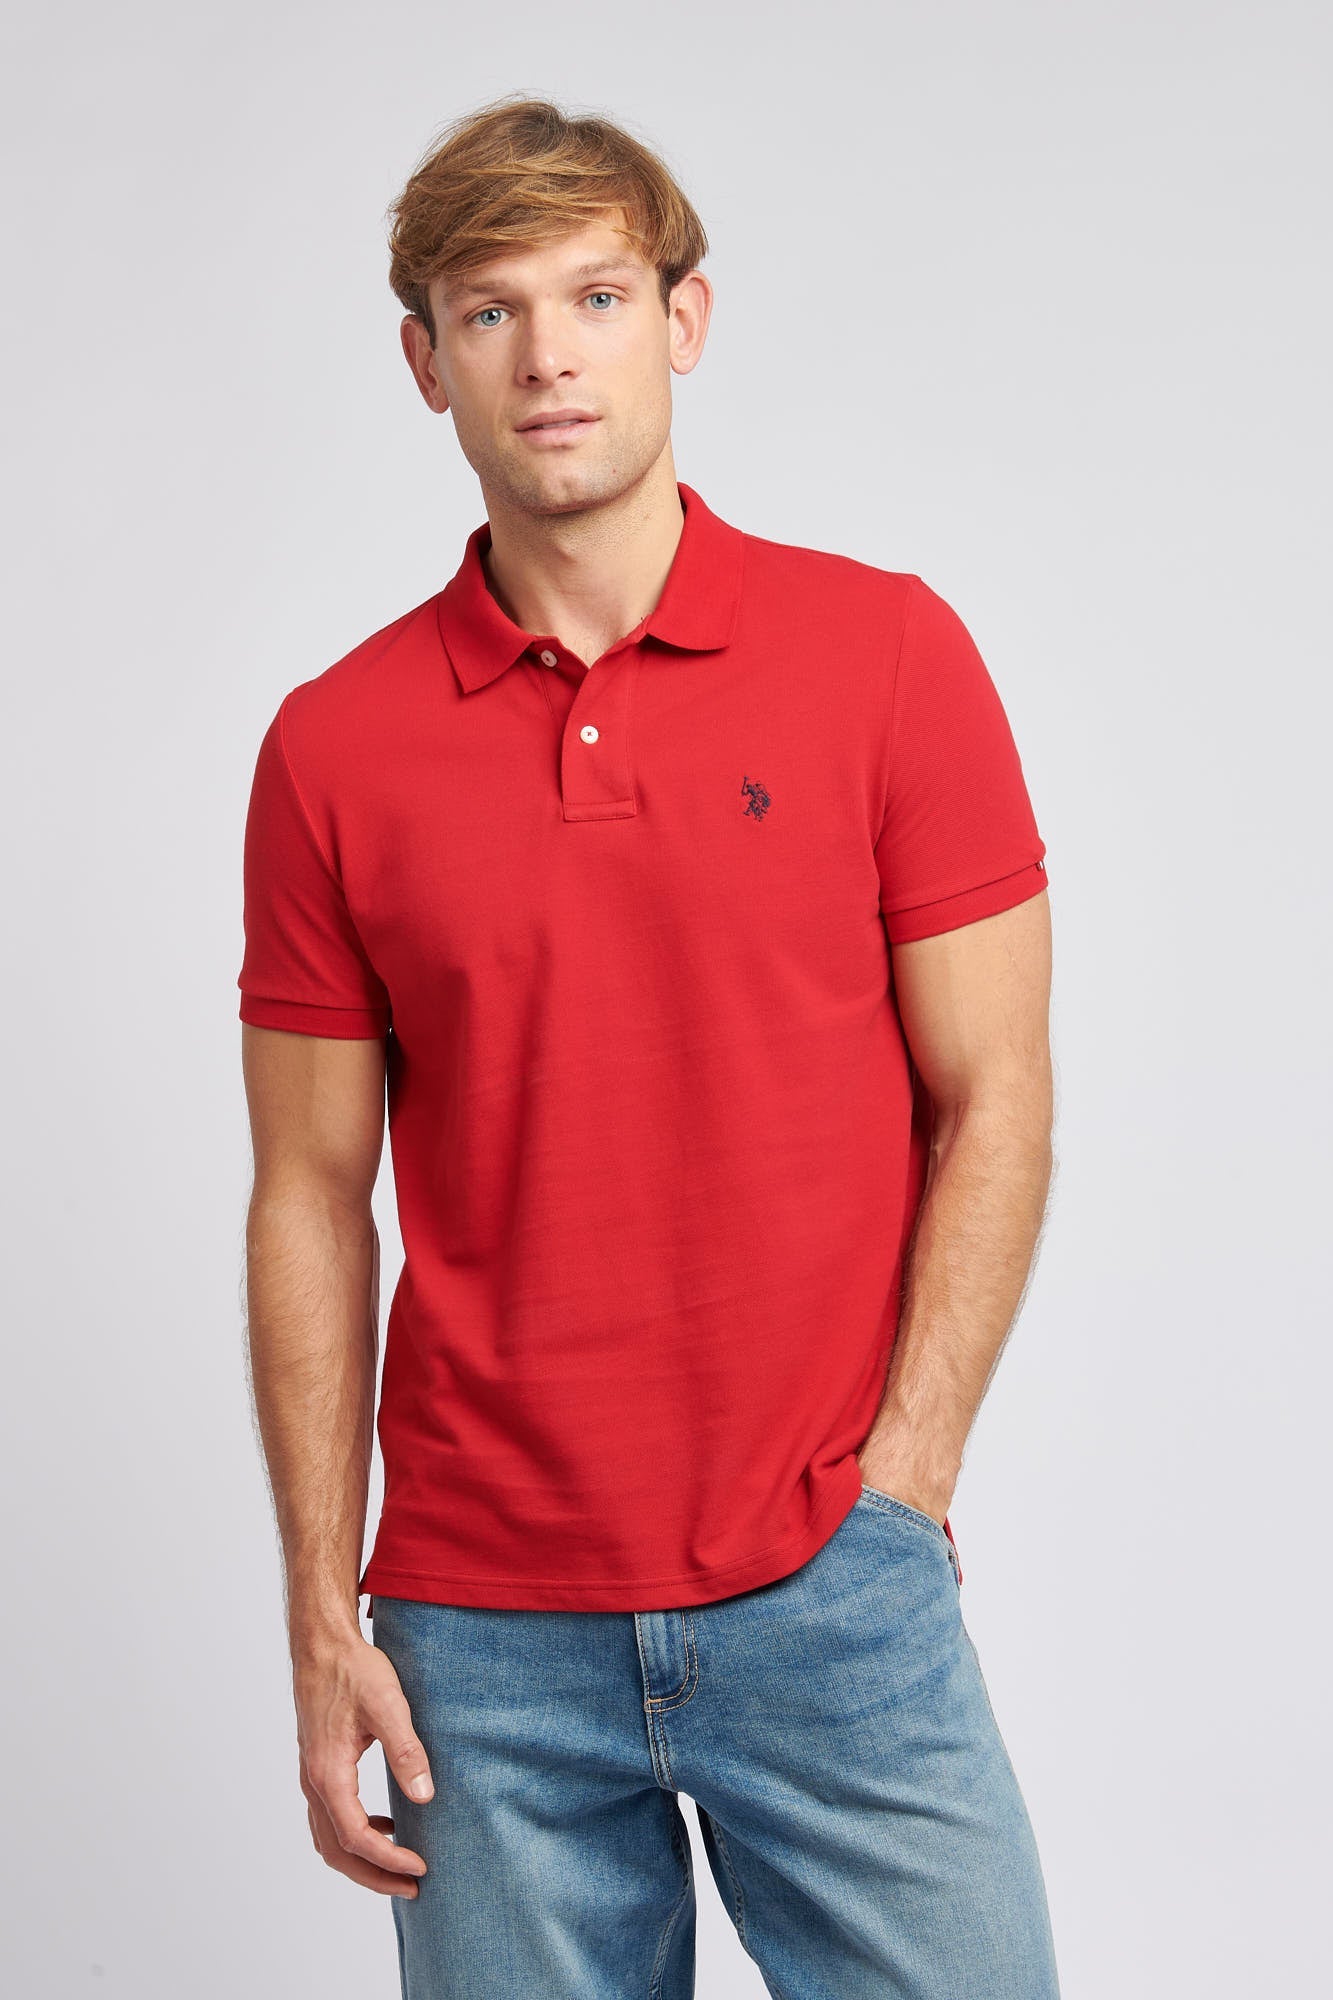 U.S. Polo Assn. Mens Pique Polo Shirt in Haute Red